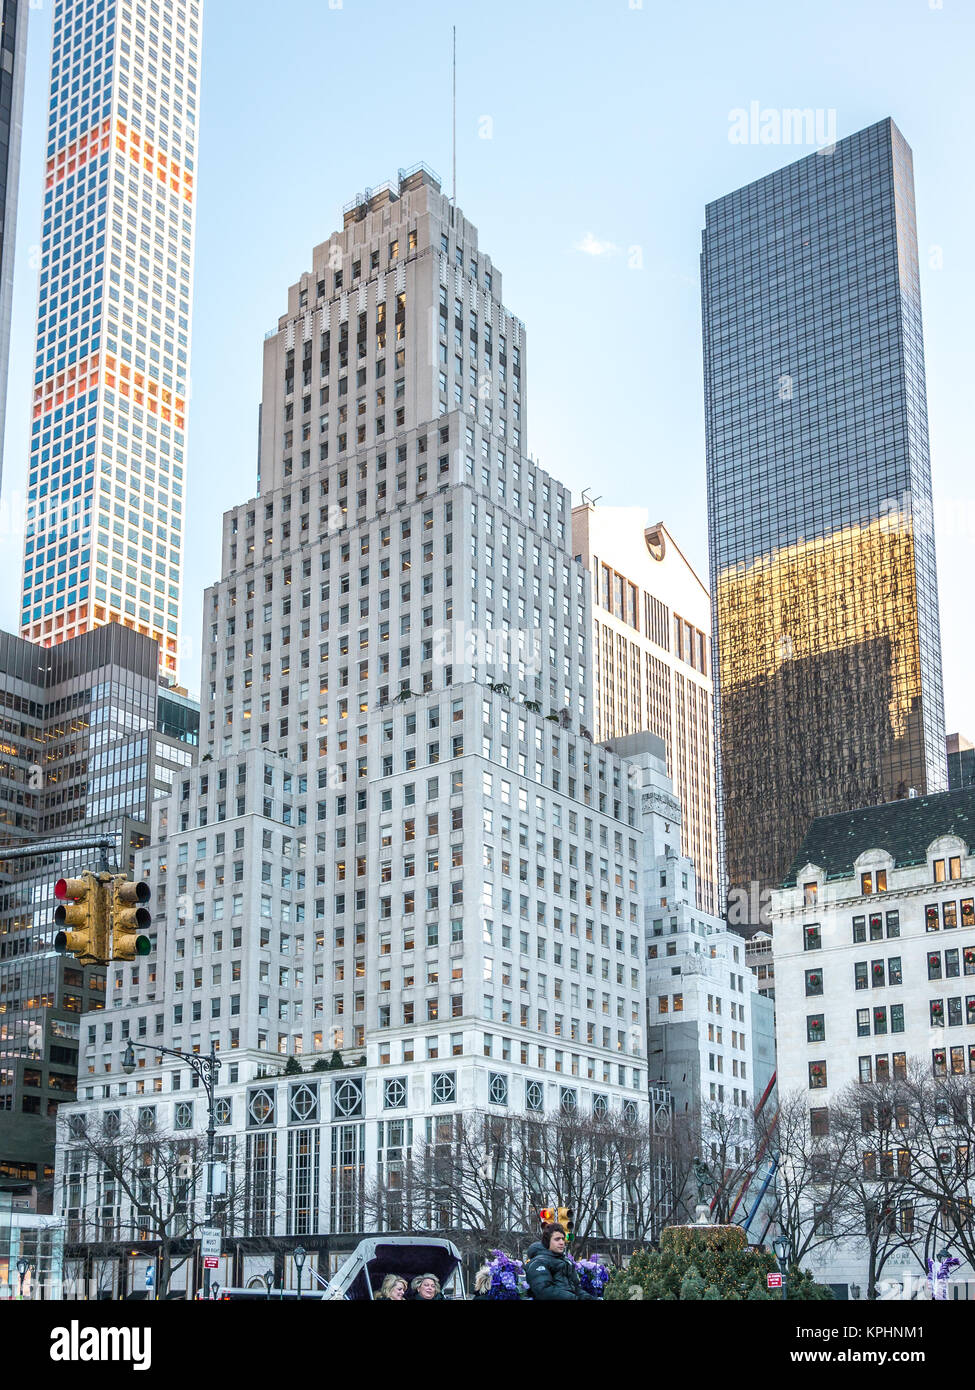 NEW YORK, Stati Uniti d'America - 5 gennaio 2015: LandmarkArt Deco edificio della Bergdorf Goodman department store. Marca conosciuta per applicazioni high-end di progettista abbigliamento e scarpe Foto Stock